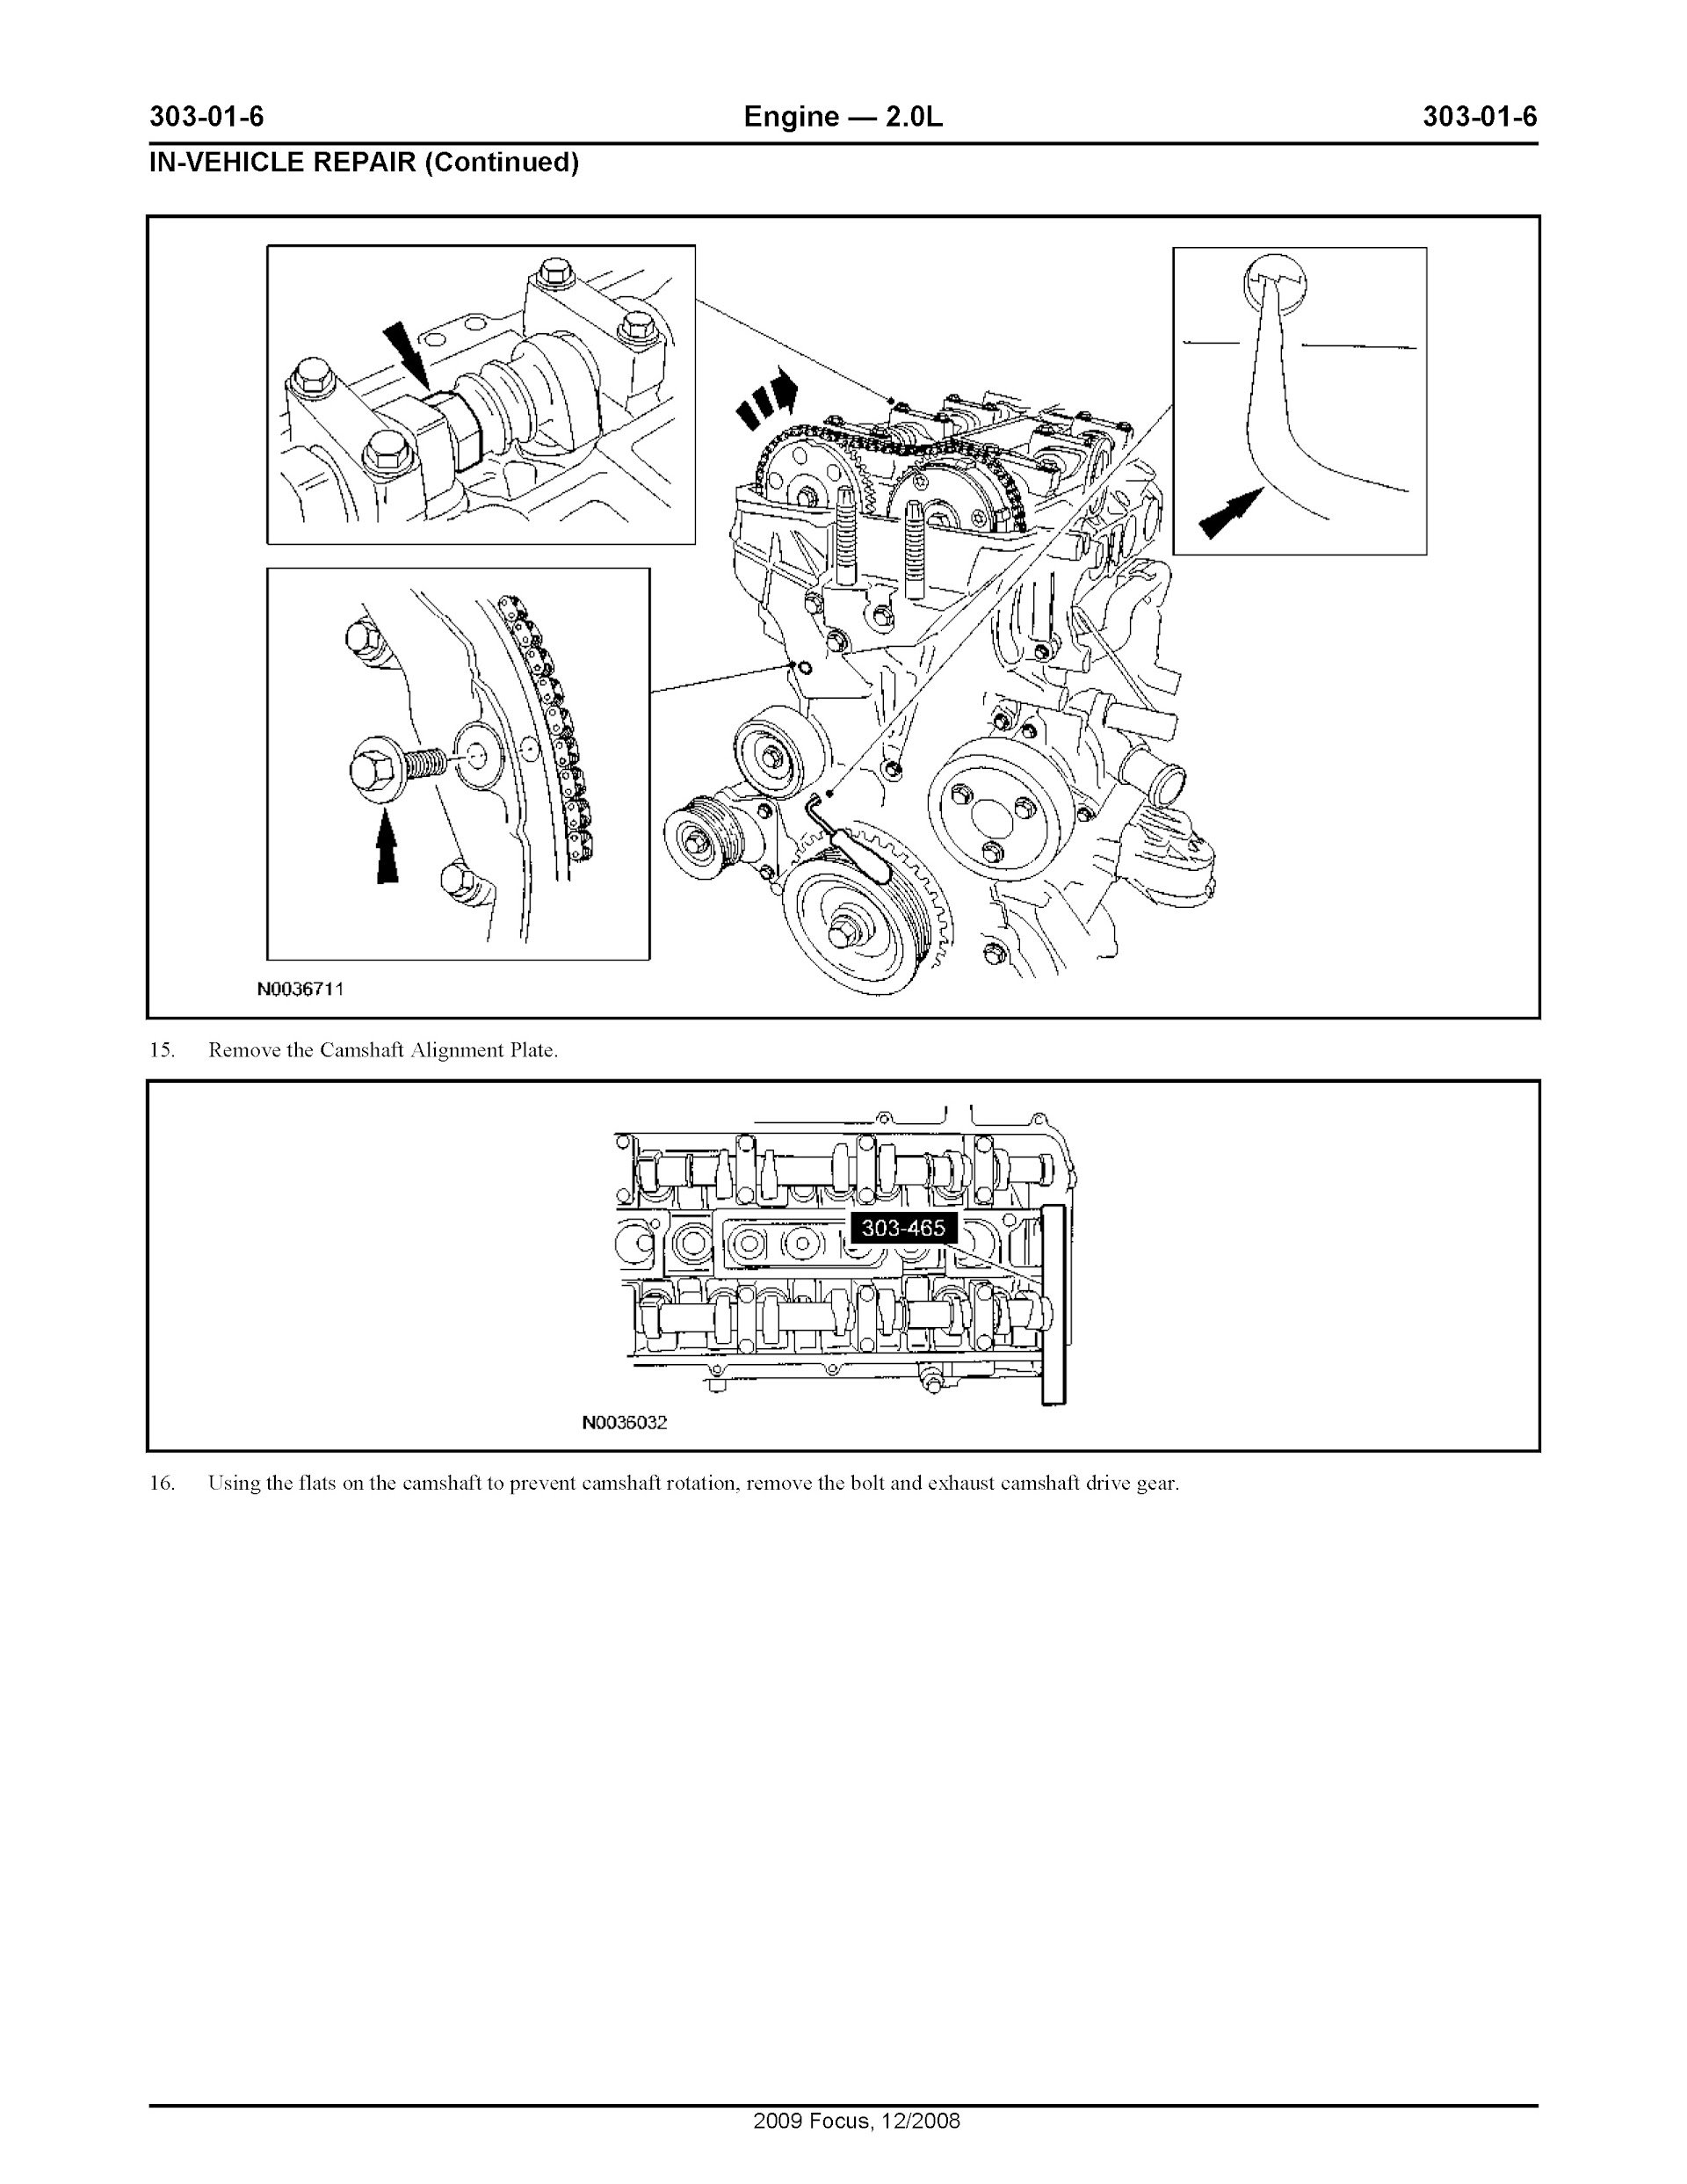 2011 Ford Focus Repair Manual Engine Mechanical 2.0L